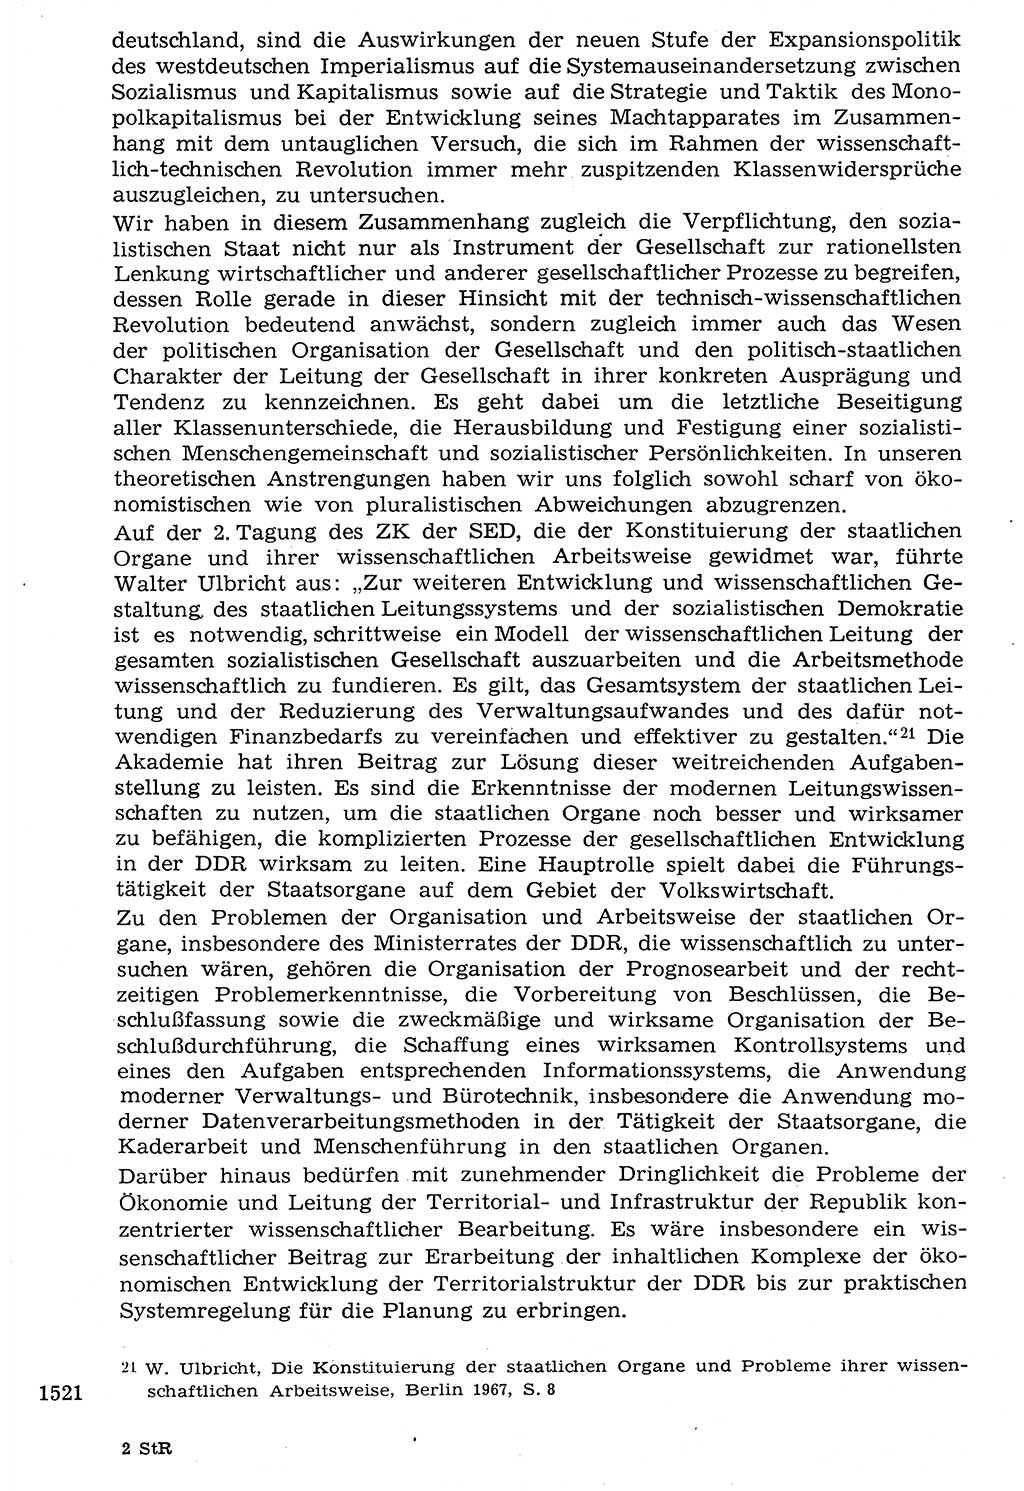 Staat und Recht (StuR), 17. Jahrgang [Deutsche Demokratische Republik (DDR)] 1968, Seite 1521 (StuR DDR 1968, S. 1521)